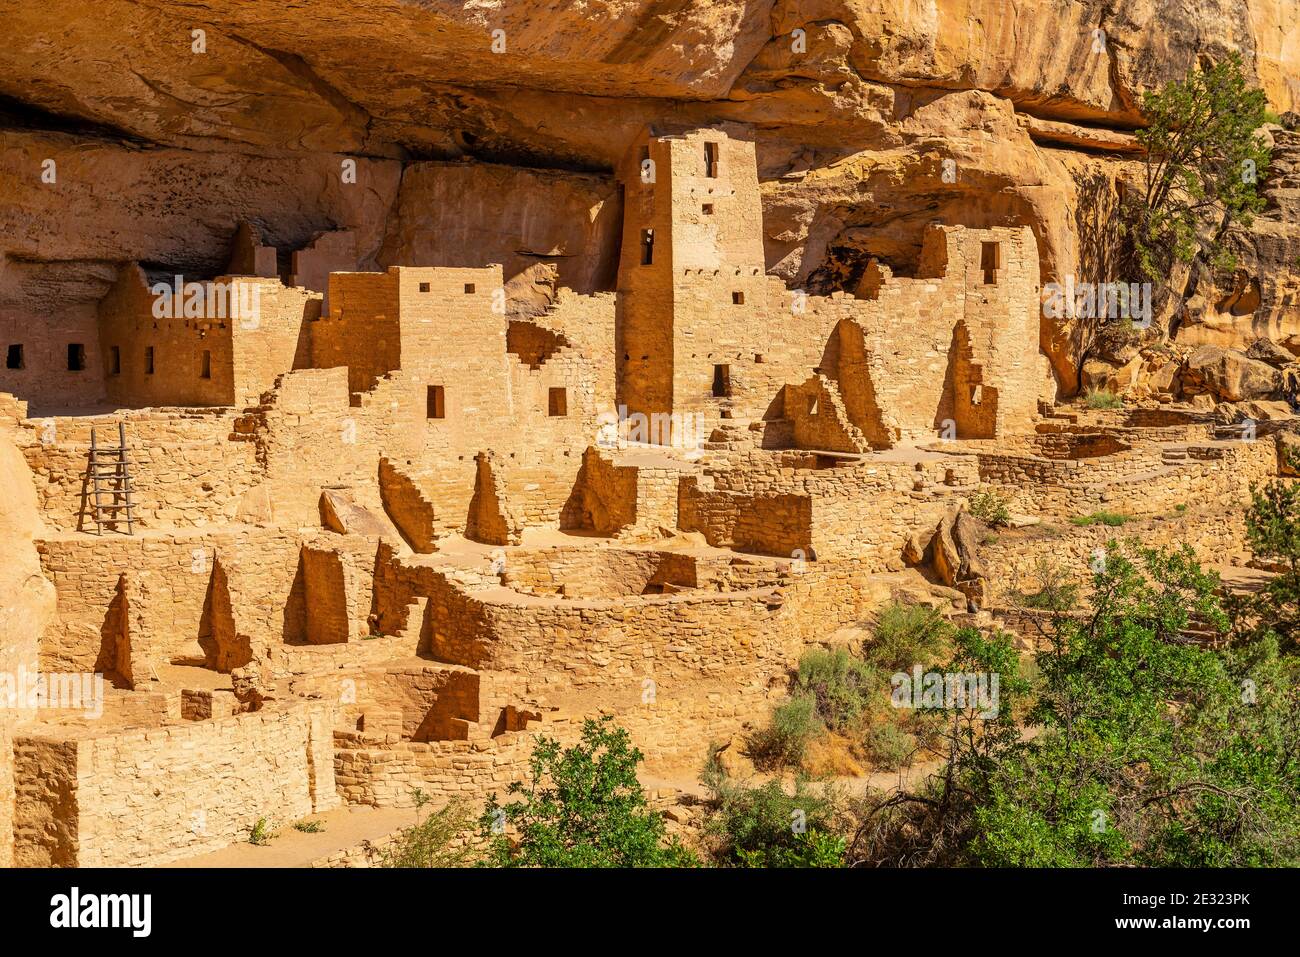 Cliff Palace de la civilisation Puebloan, parc national de Mesa Verde, Colorado, États-Unis d'Amérique. Banque D'Images